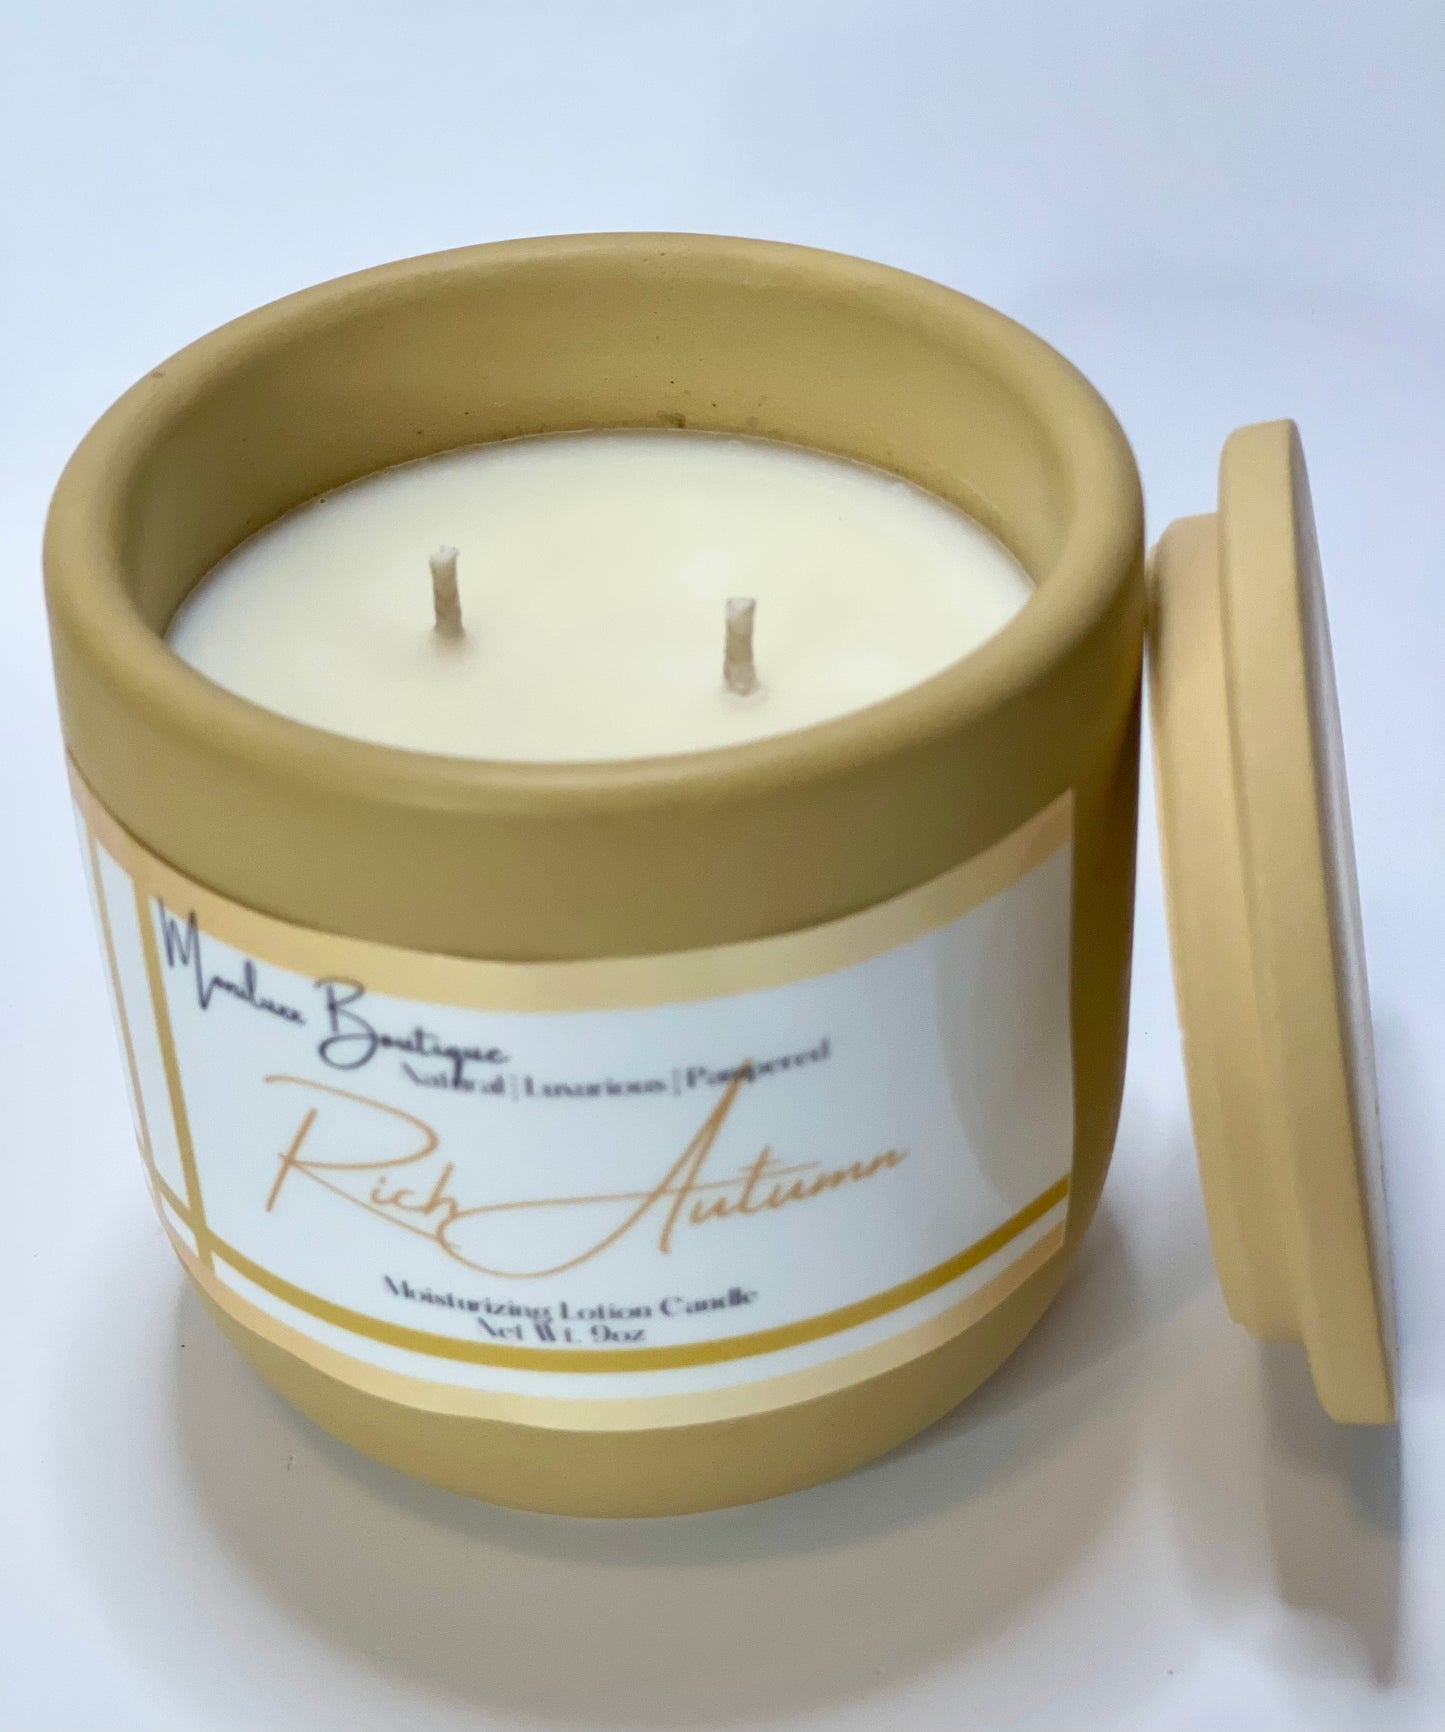 Lotion Candle | Rich Autumn - Moniluxx Boutique